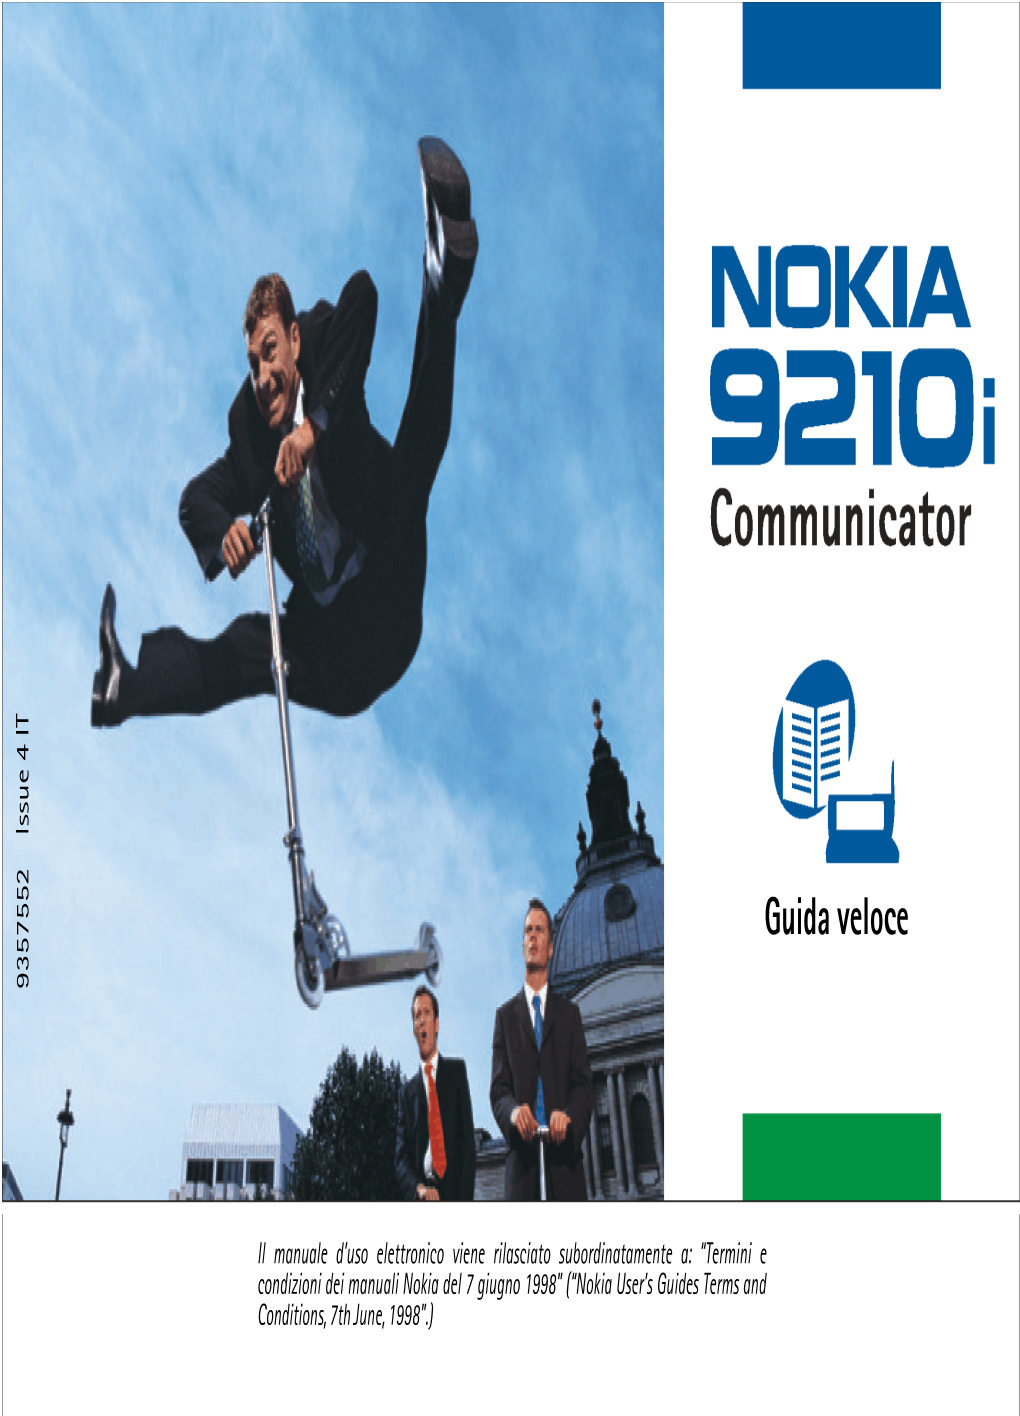 Nokia 9210I Communicator, Un Versatile Strumento Di Comunicazione